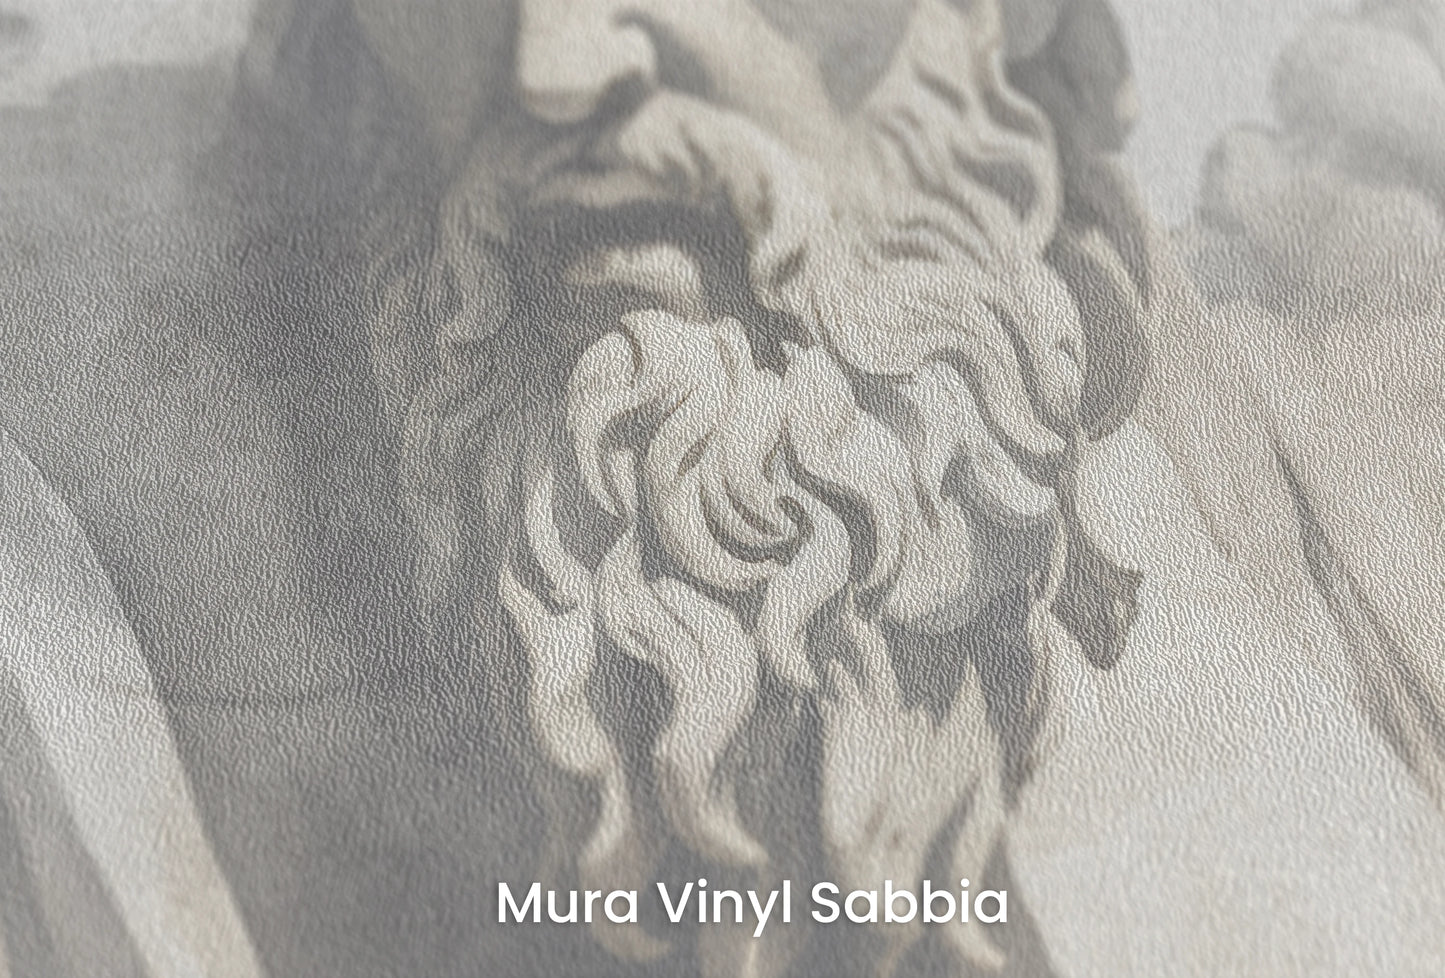 Zbliżenie na artystyczną fototapetę o nazwie Zeus's Contemplation na podłożu Mura Vinyl Sabbia struktura grubego ziarna piasku.